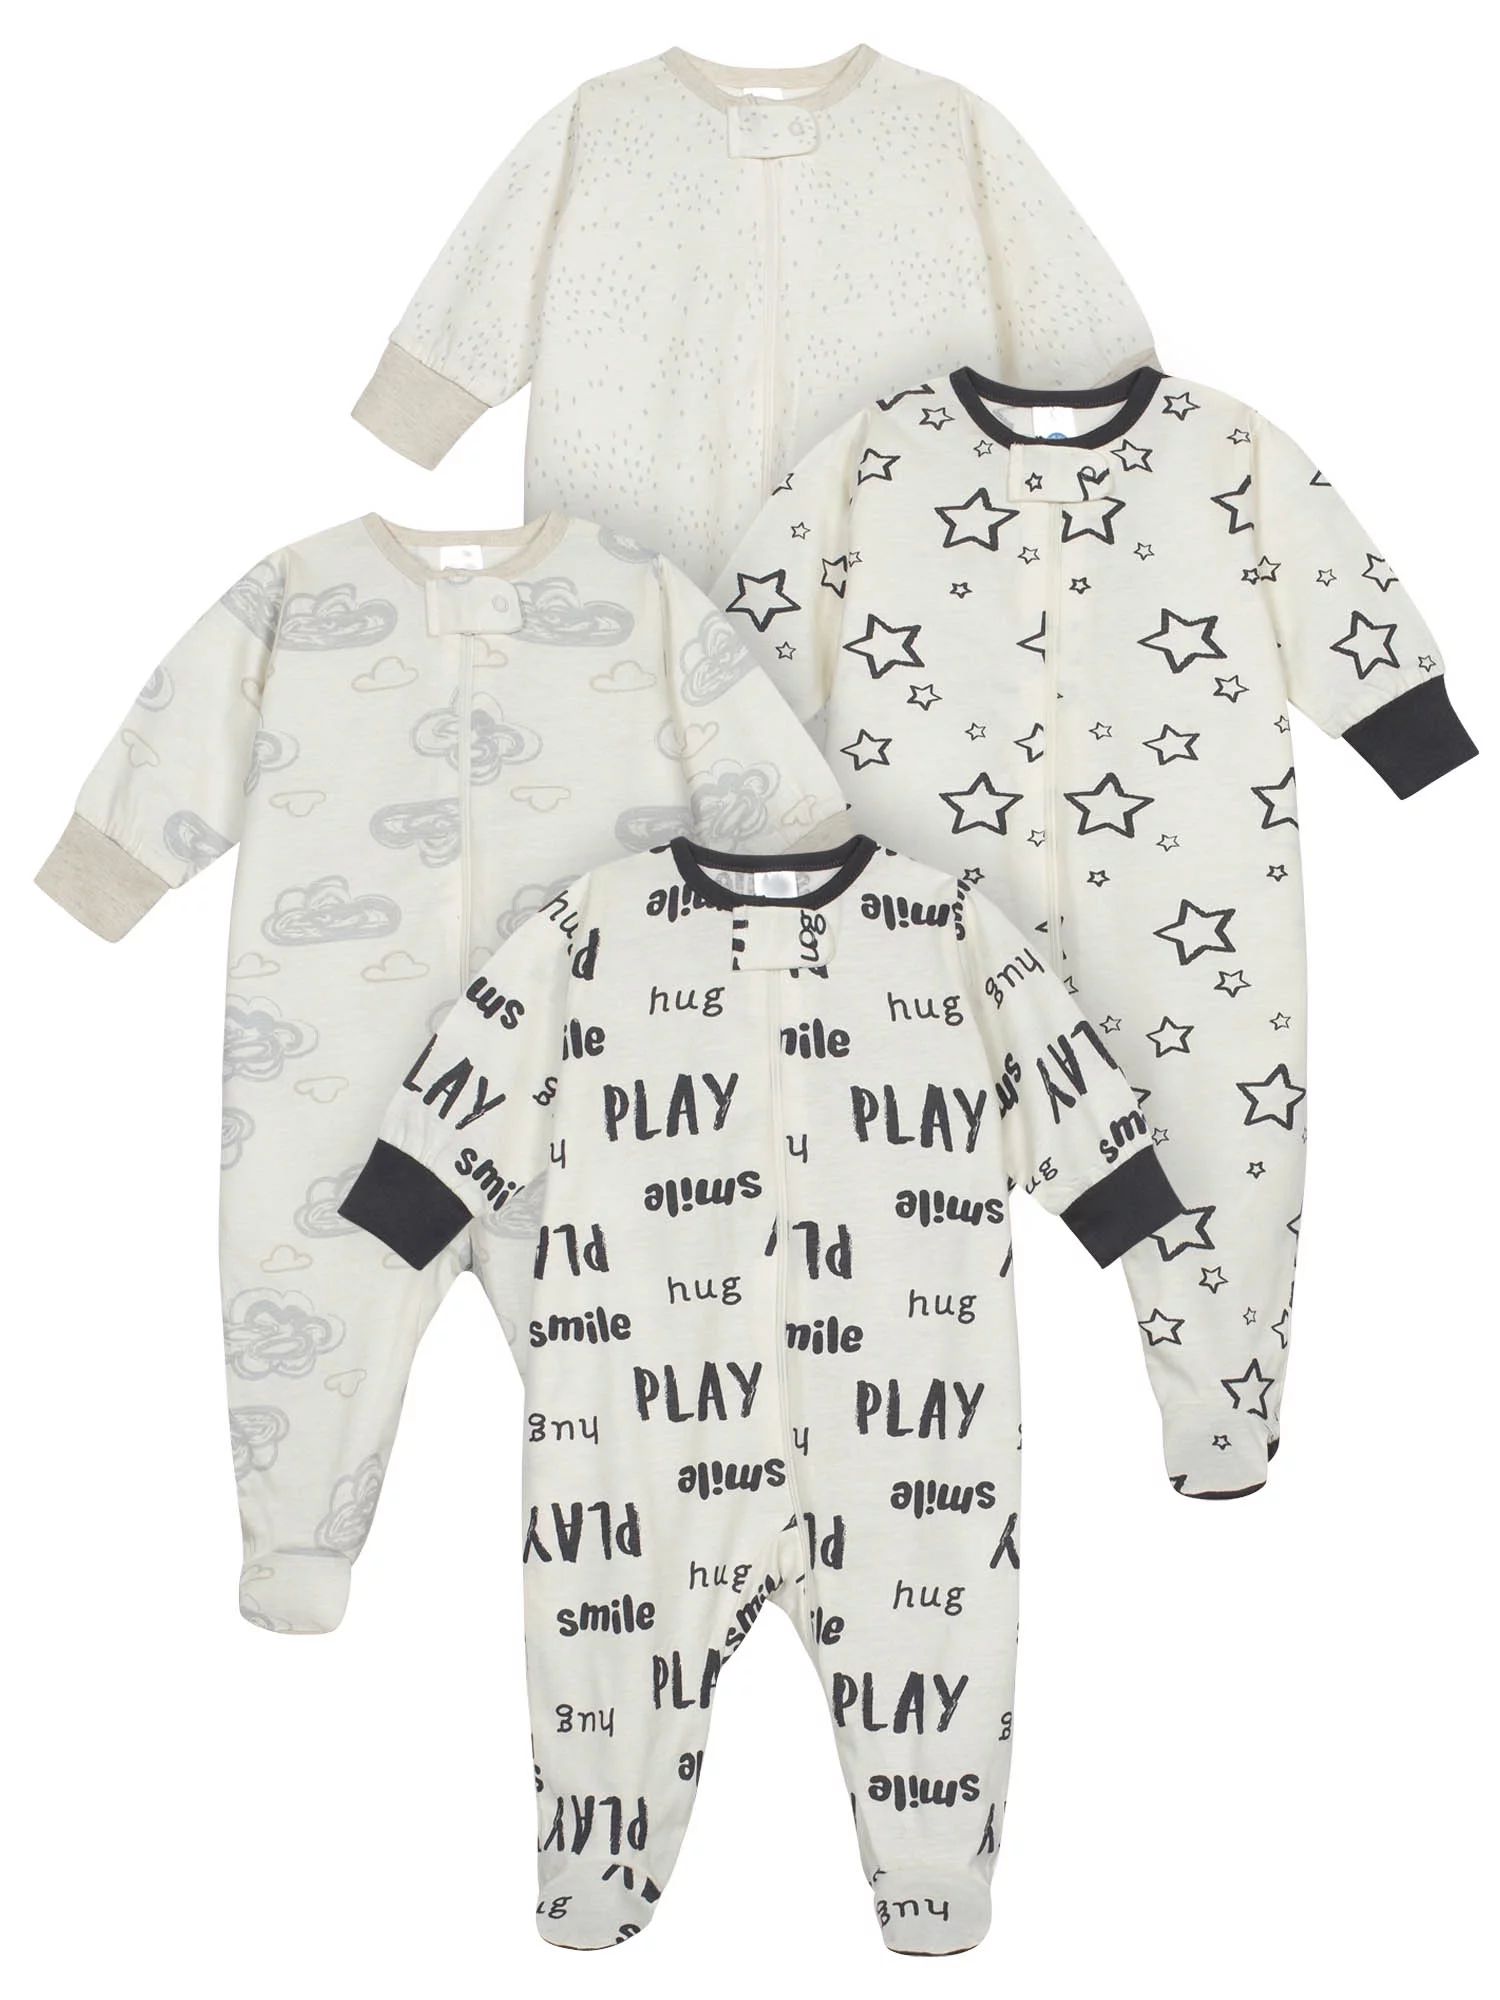 Onesies Brand Baby Boy or Girl Gender Neutral Sleep 'N Play Footed Pajamas, 4-Pack | Walmart (US)